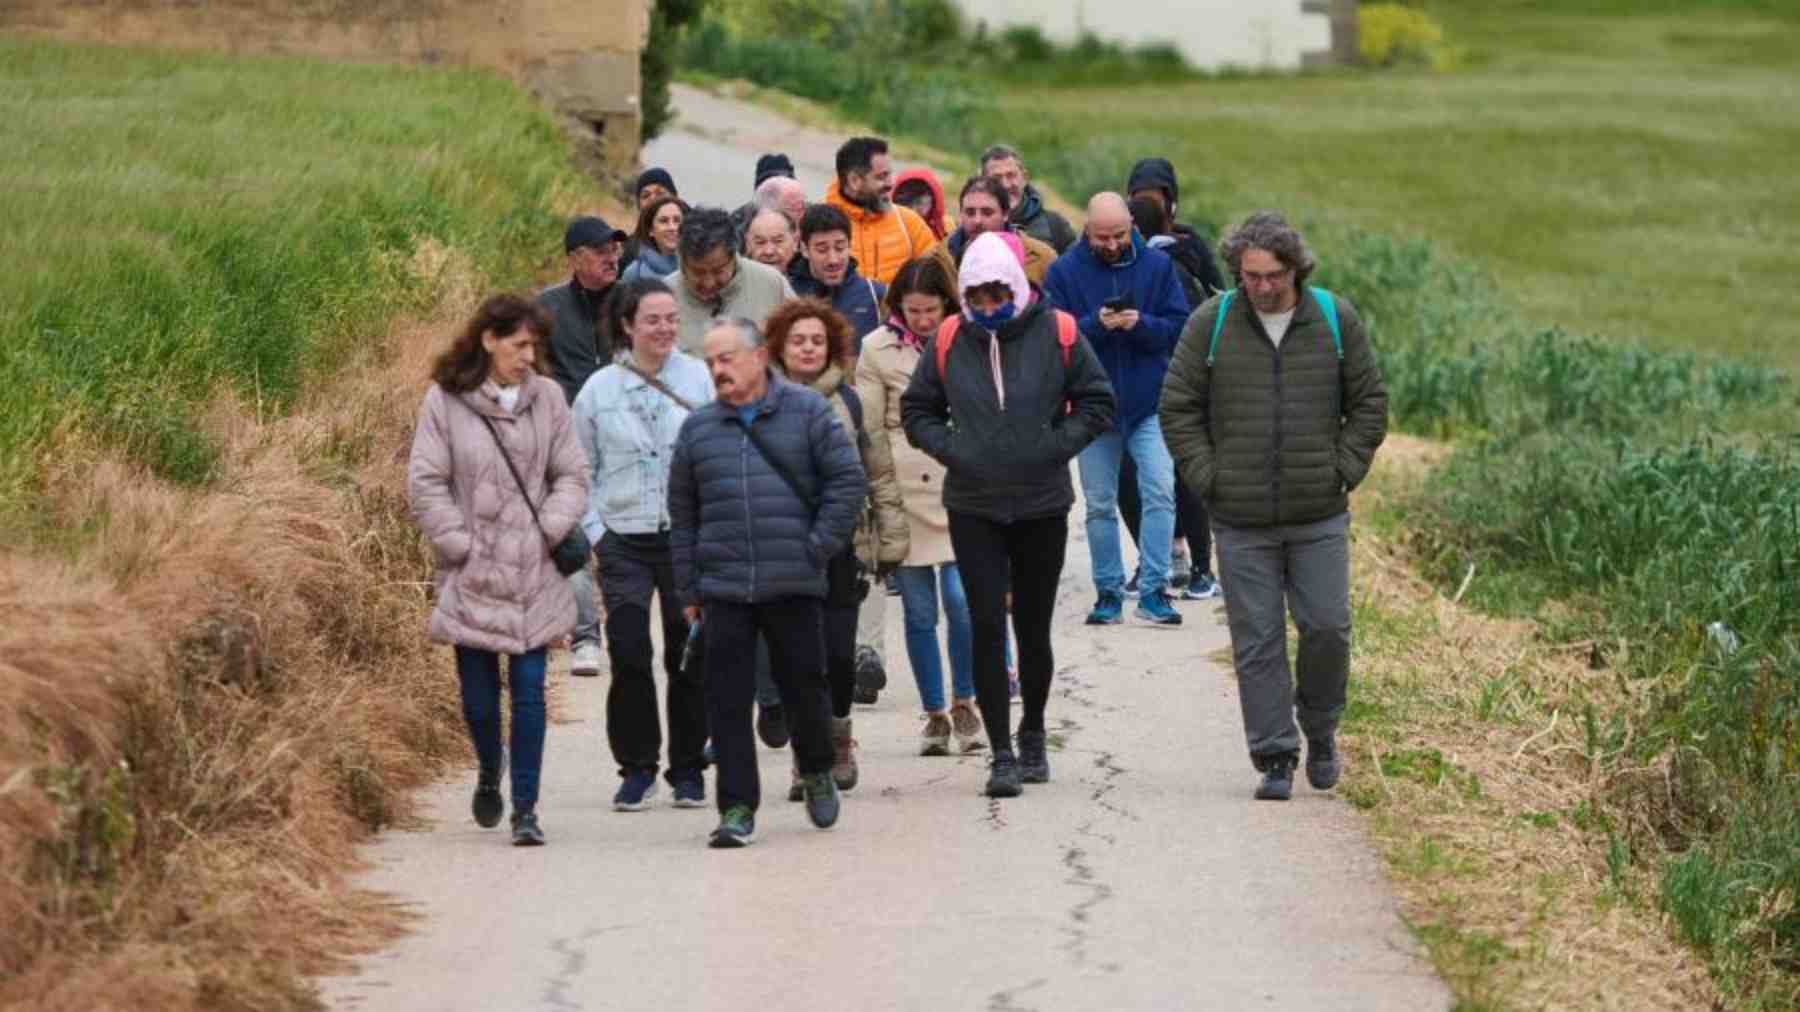 15 parlamentarios de Navarra dedican un día de trabajo a hacer una caminata y comer juntos